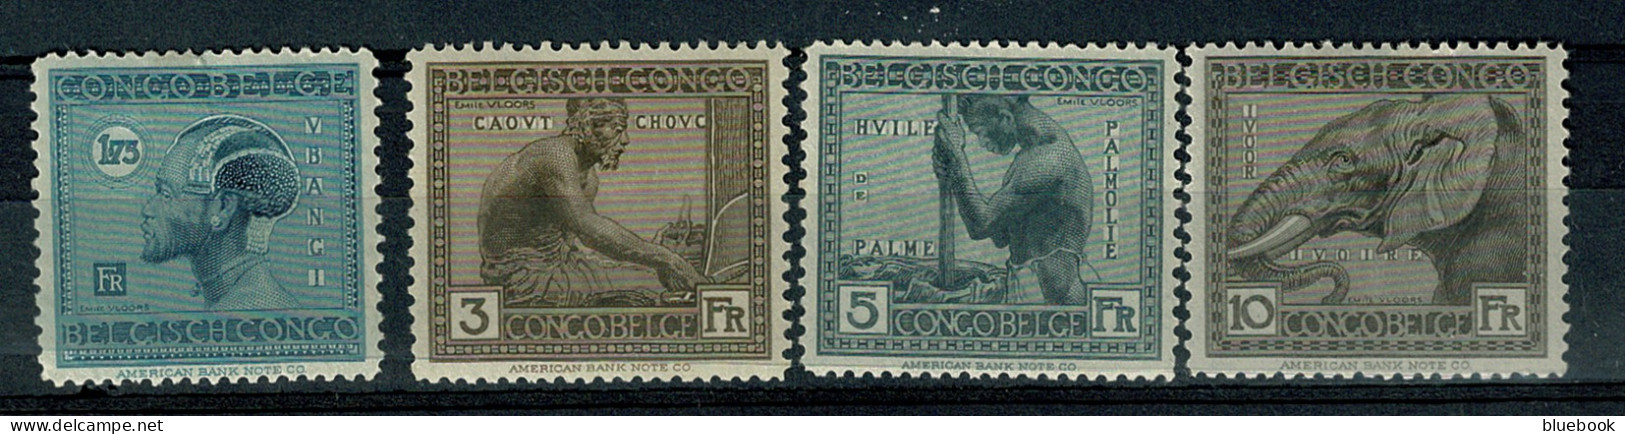 Ref 1622 - Belgian Congo Now Zaire - 1923 (4) Mint Stamps Ex Belgium Colony - Ongebruikt